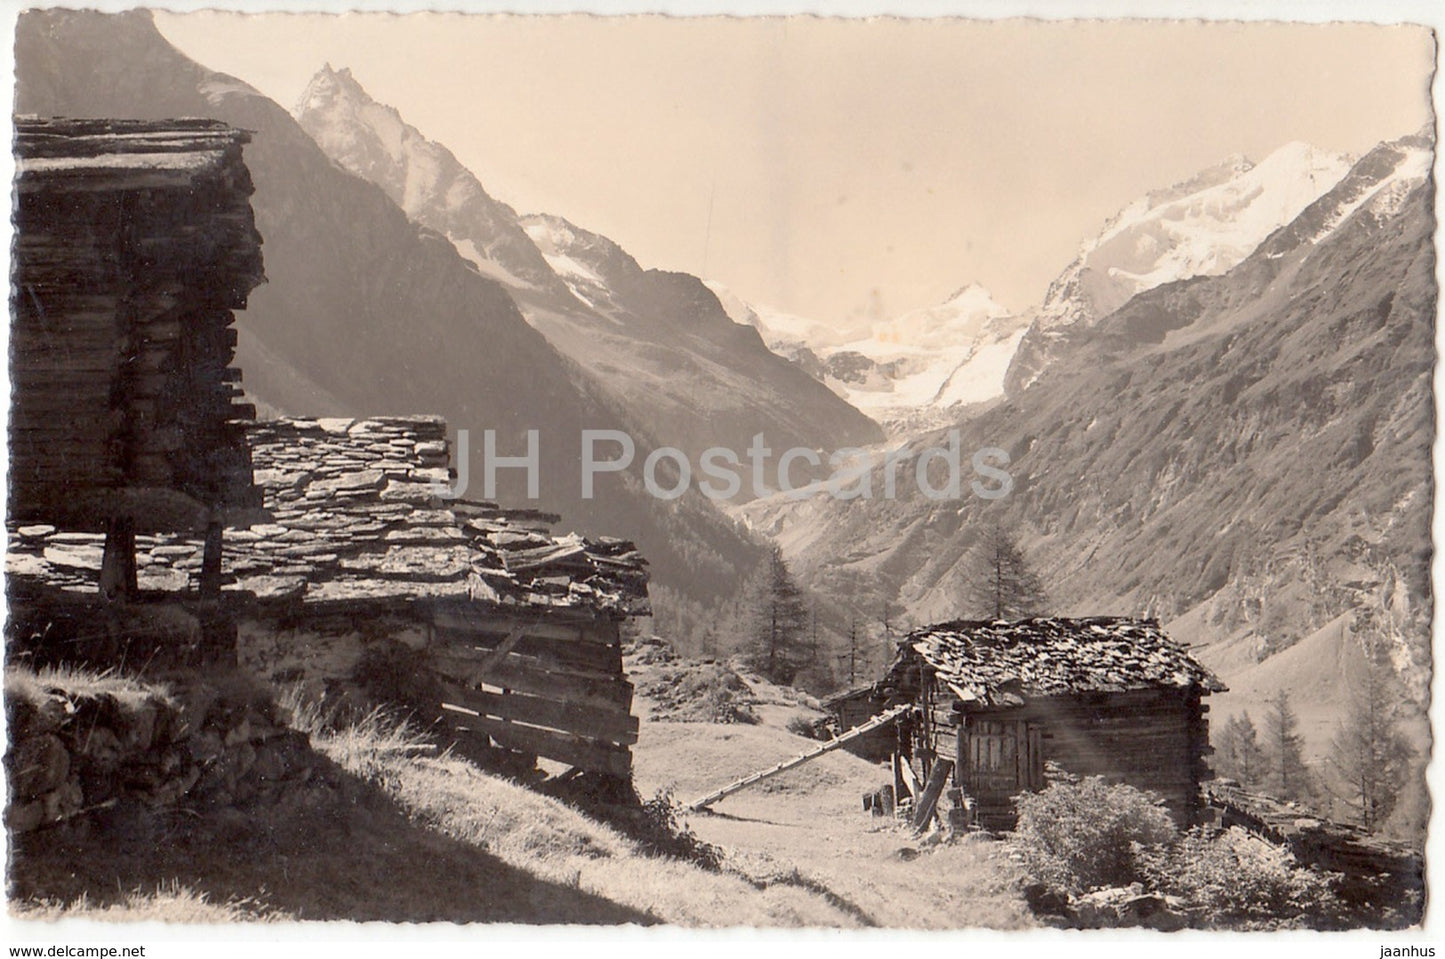 Zinal. Besso-Pte. de Zinal-Dt. Blanche Grd. Cornier - 8846 - Switzerland - 1939 - used - JH Postcards